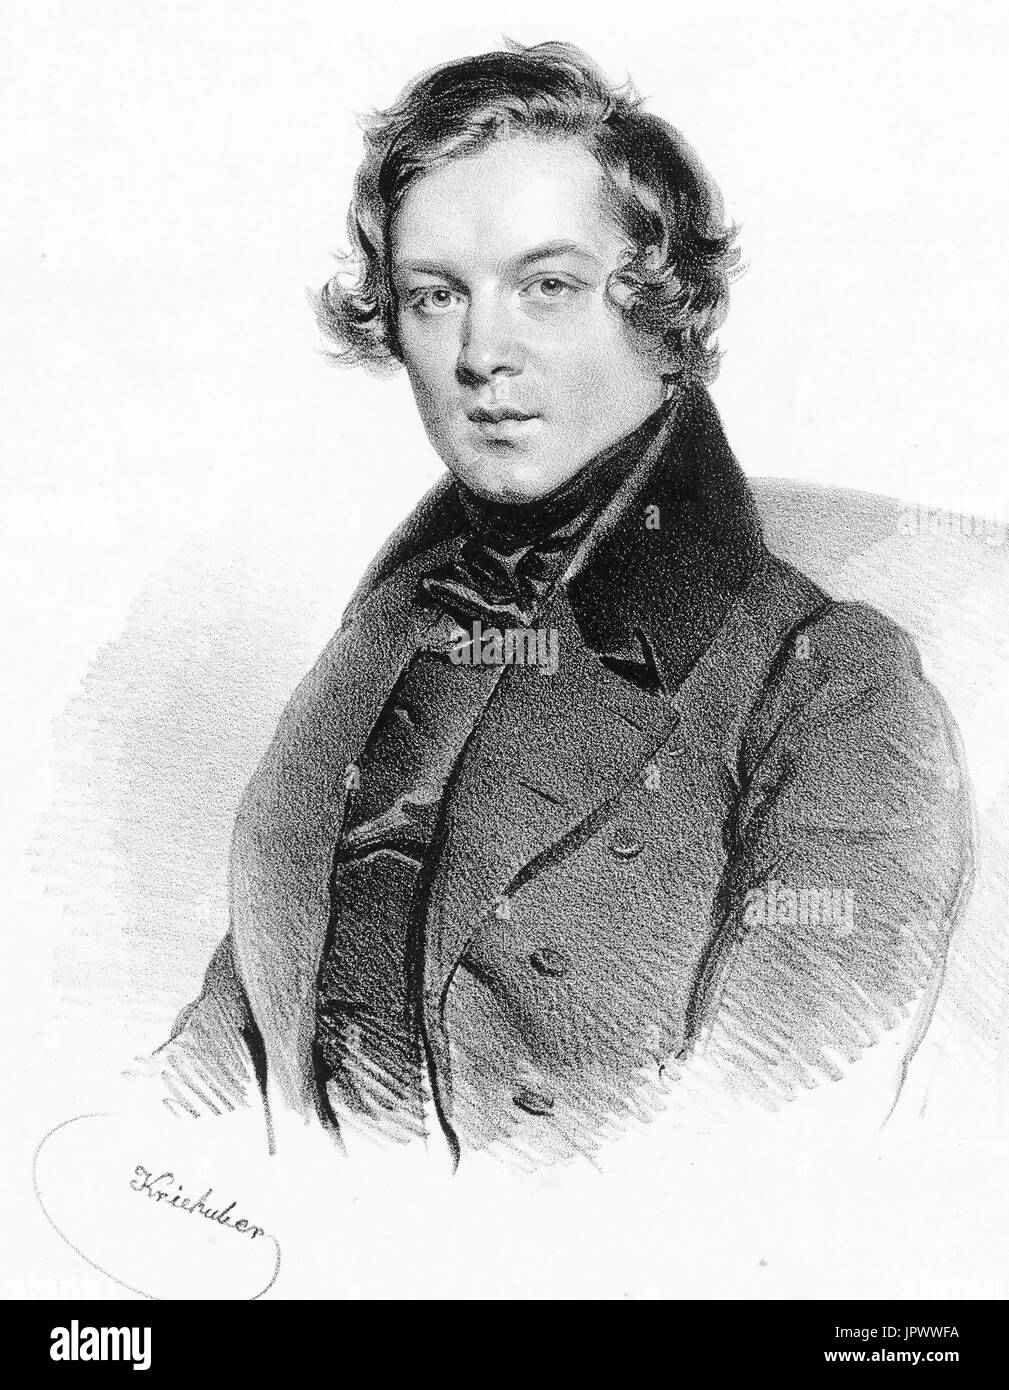 ROBERT Schumann (1810-1856) compositeur romantique allemand dans une gravure par Josef Kriehuber 1839 Banque D'Images